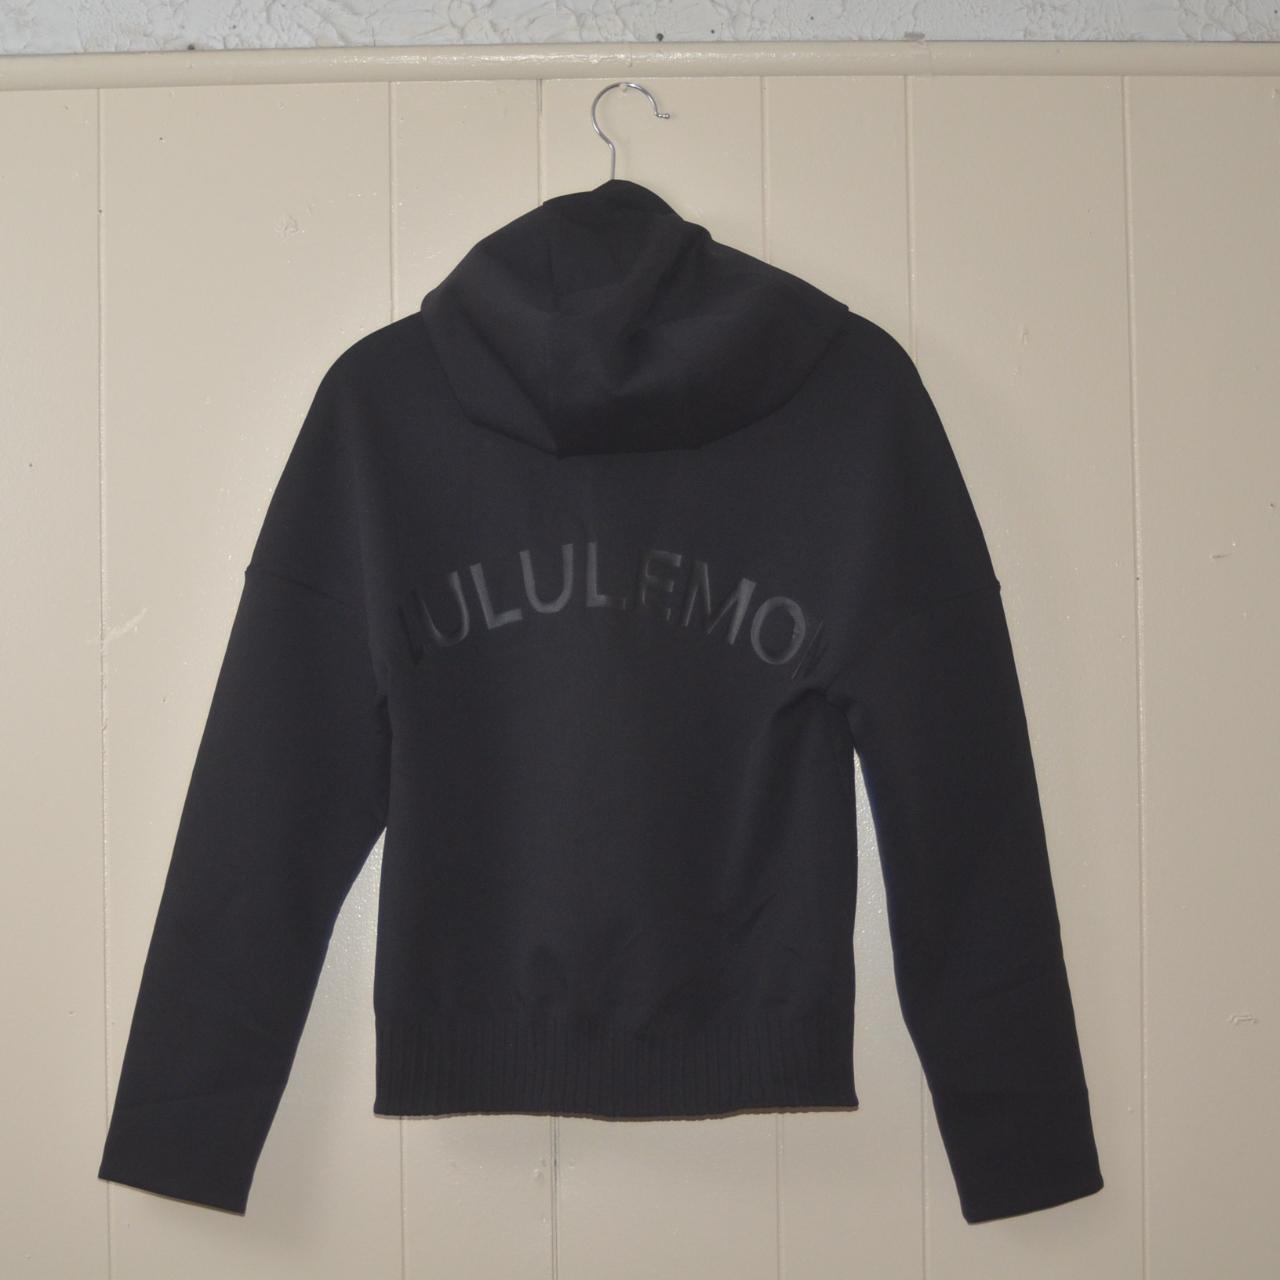 Lululemon limited edition black zip-up jacket. Size... - Depop